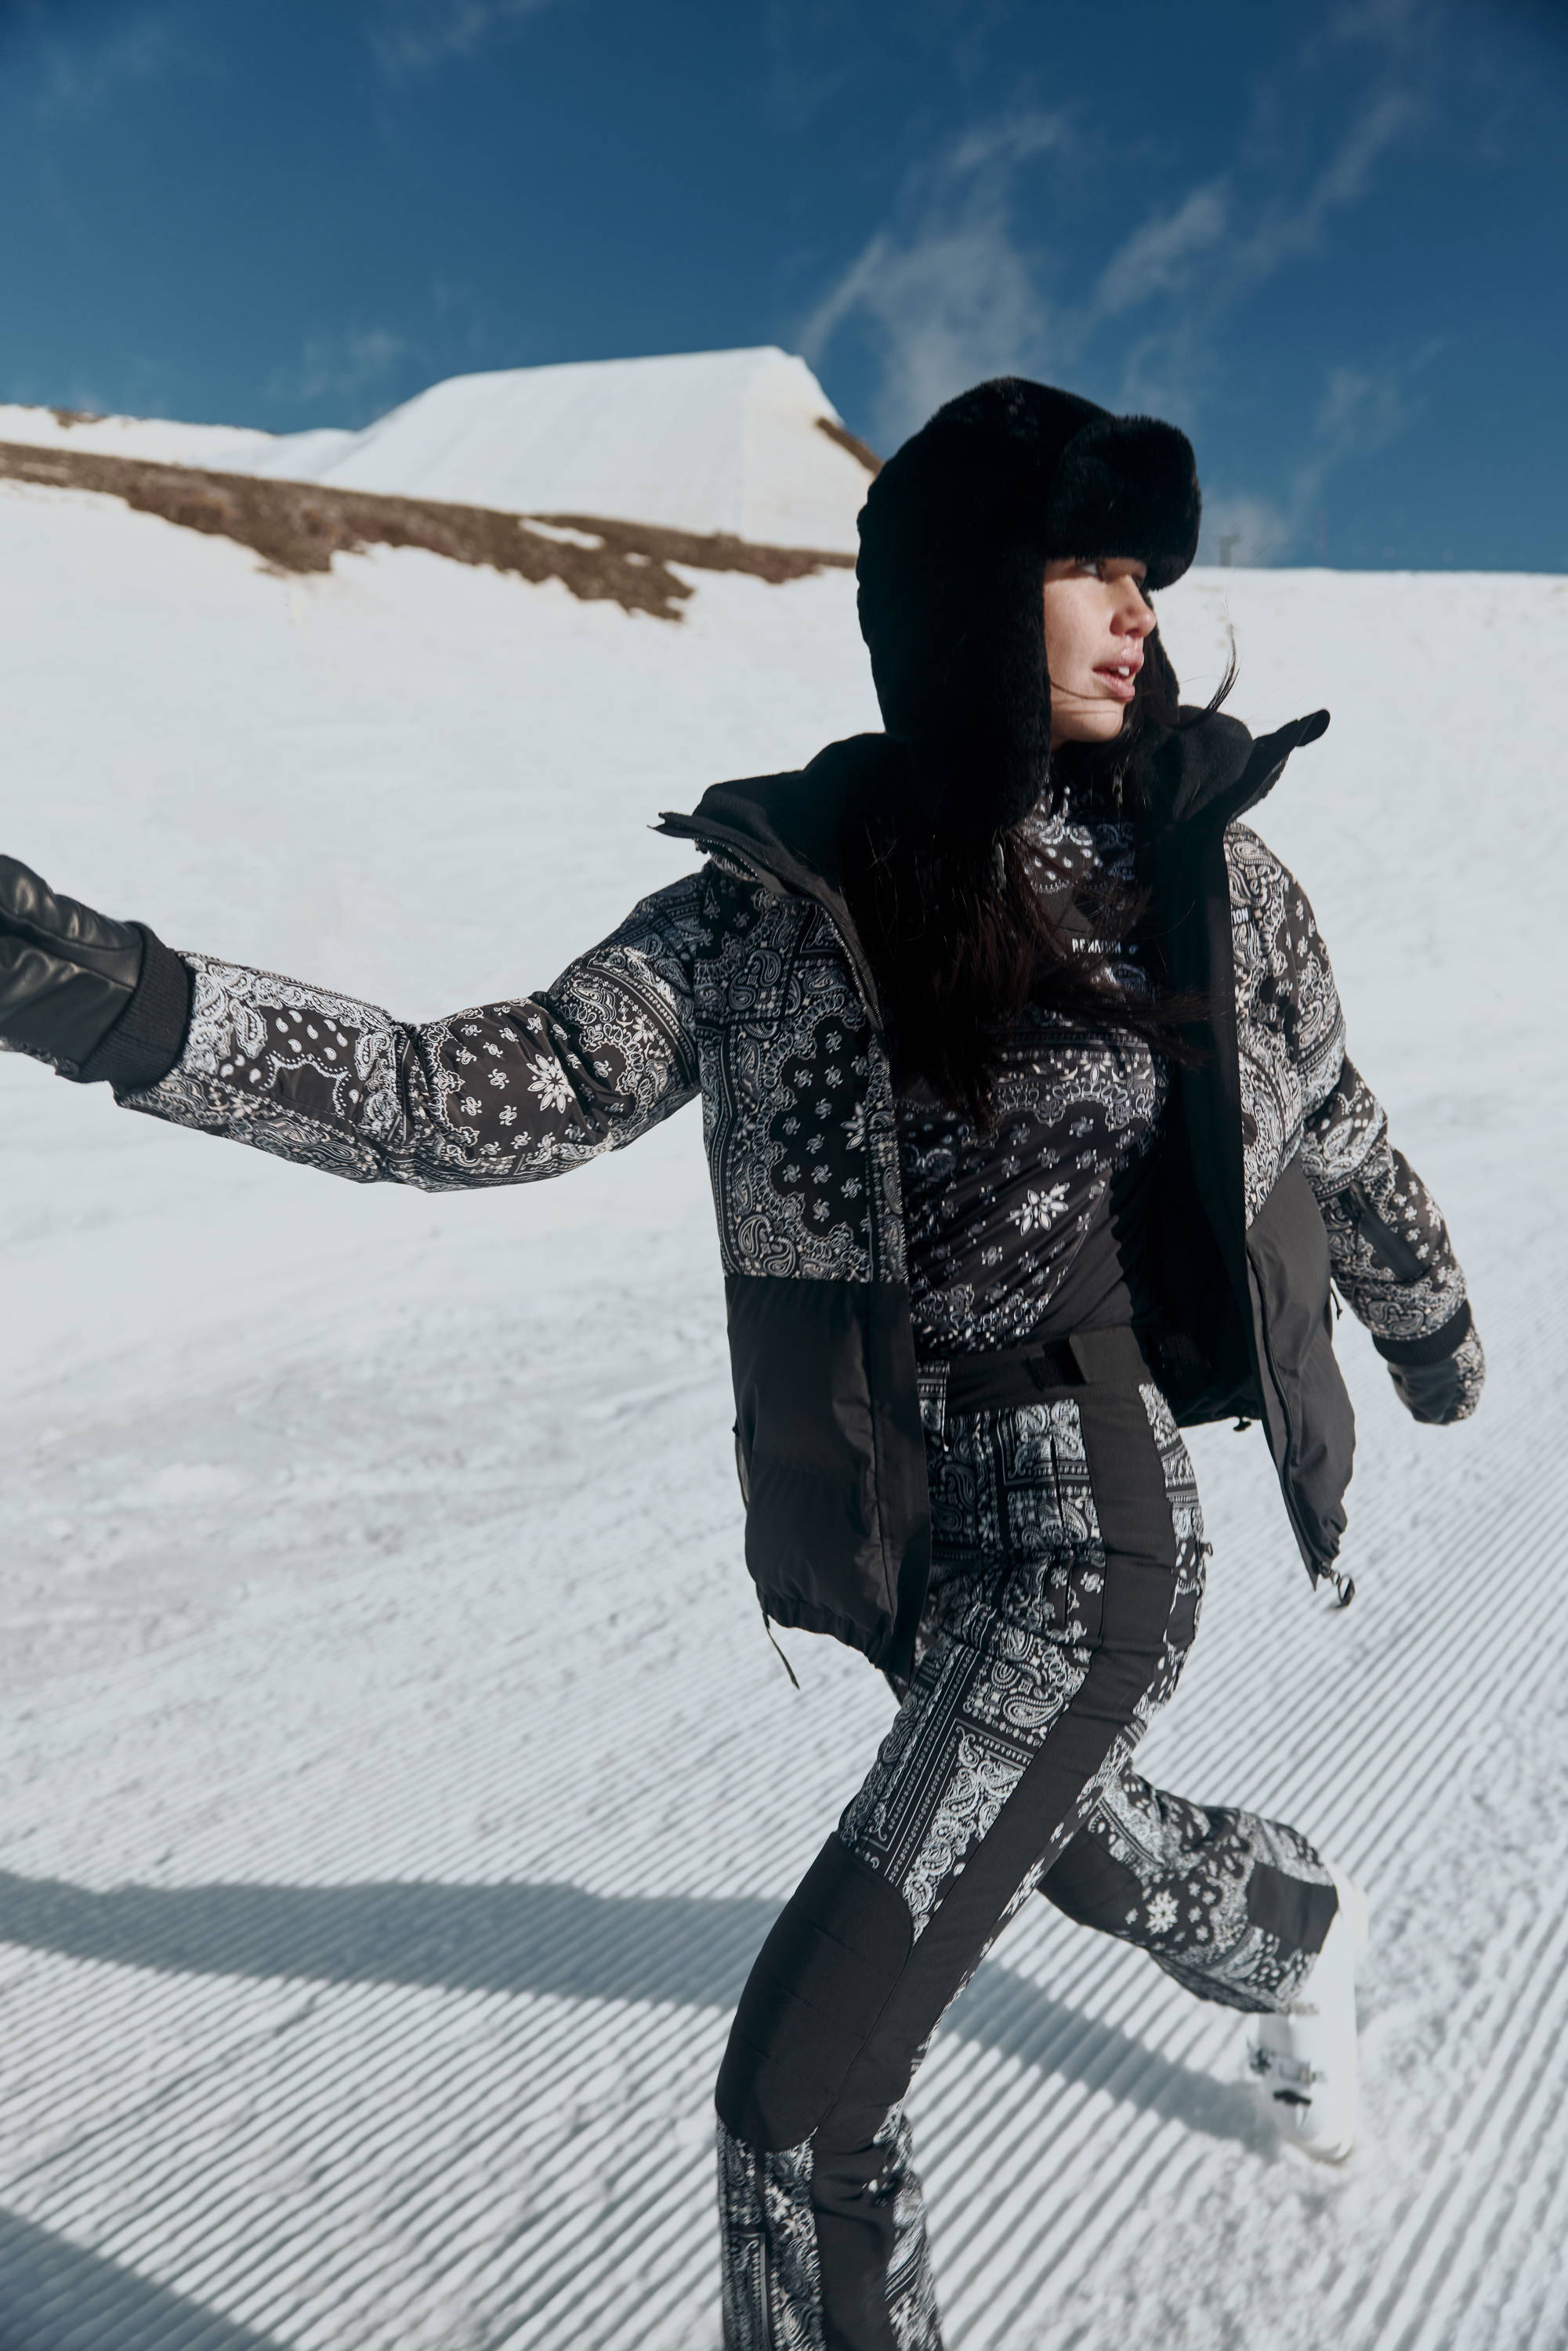 Girl walking on ski slopes wearing ski gear